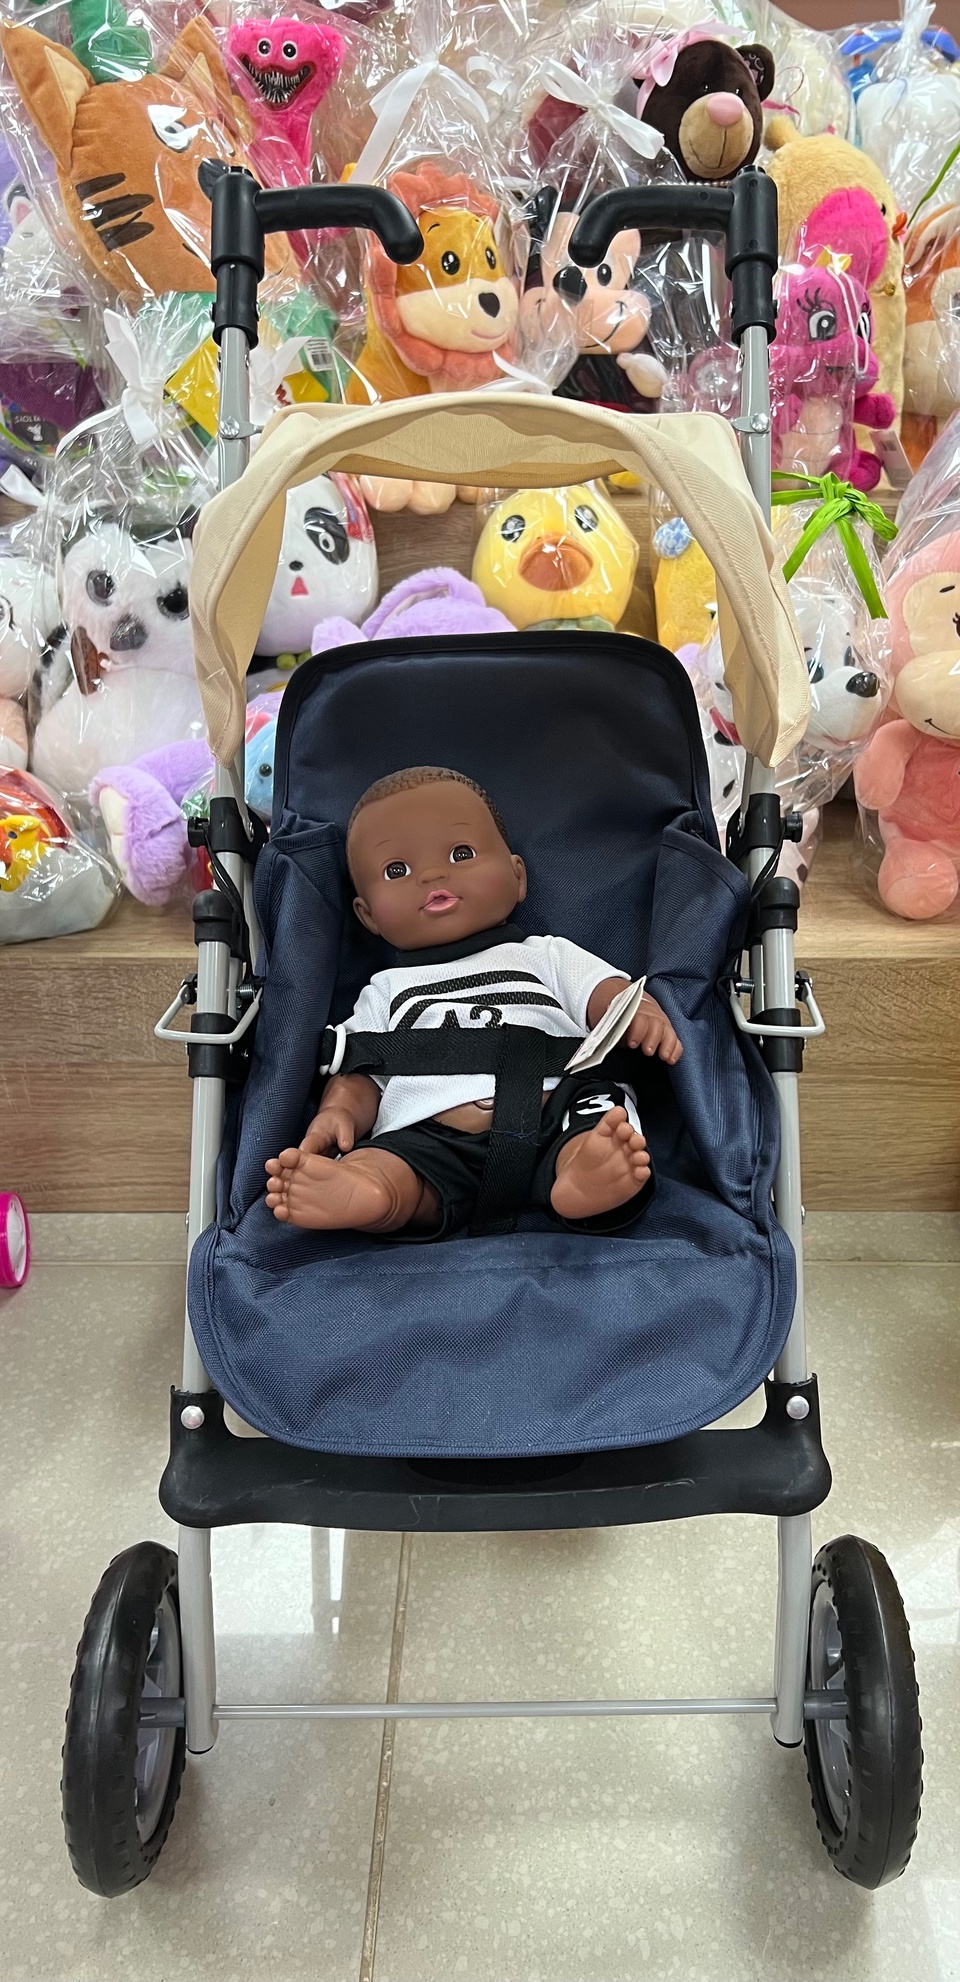 Прогулочная коляска для кукол - 3 850 ₽, заказать онлайн.